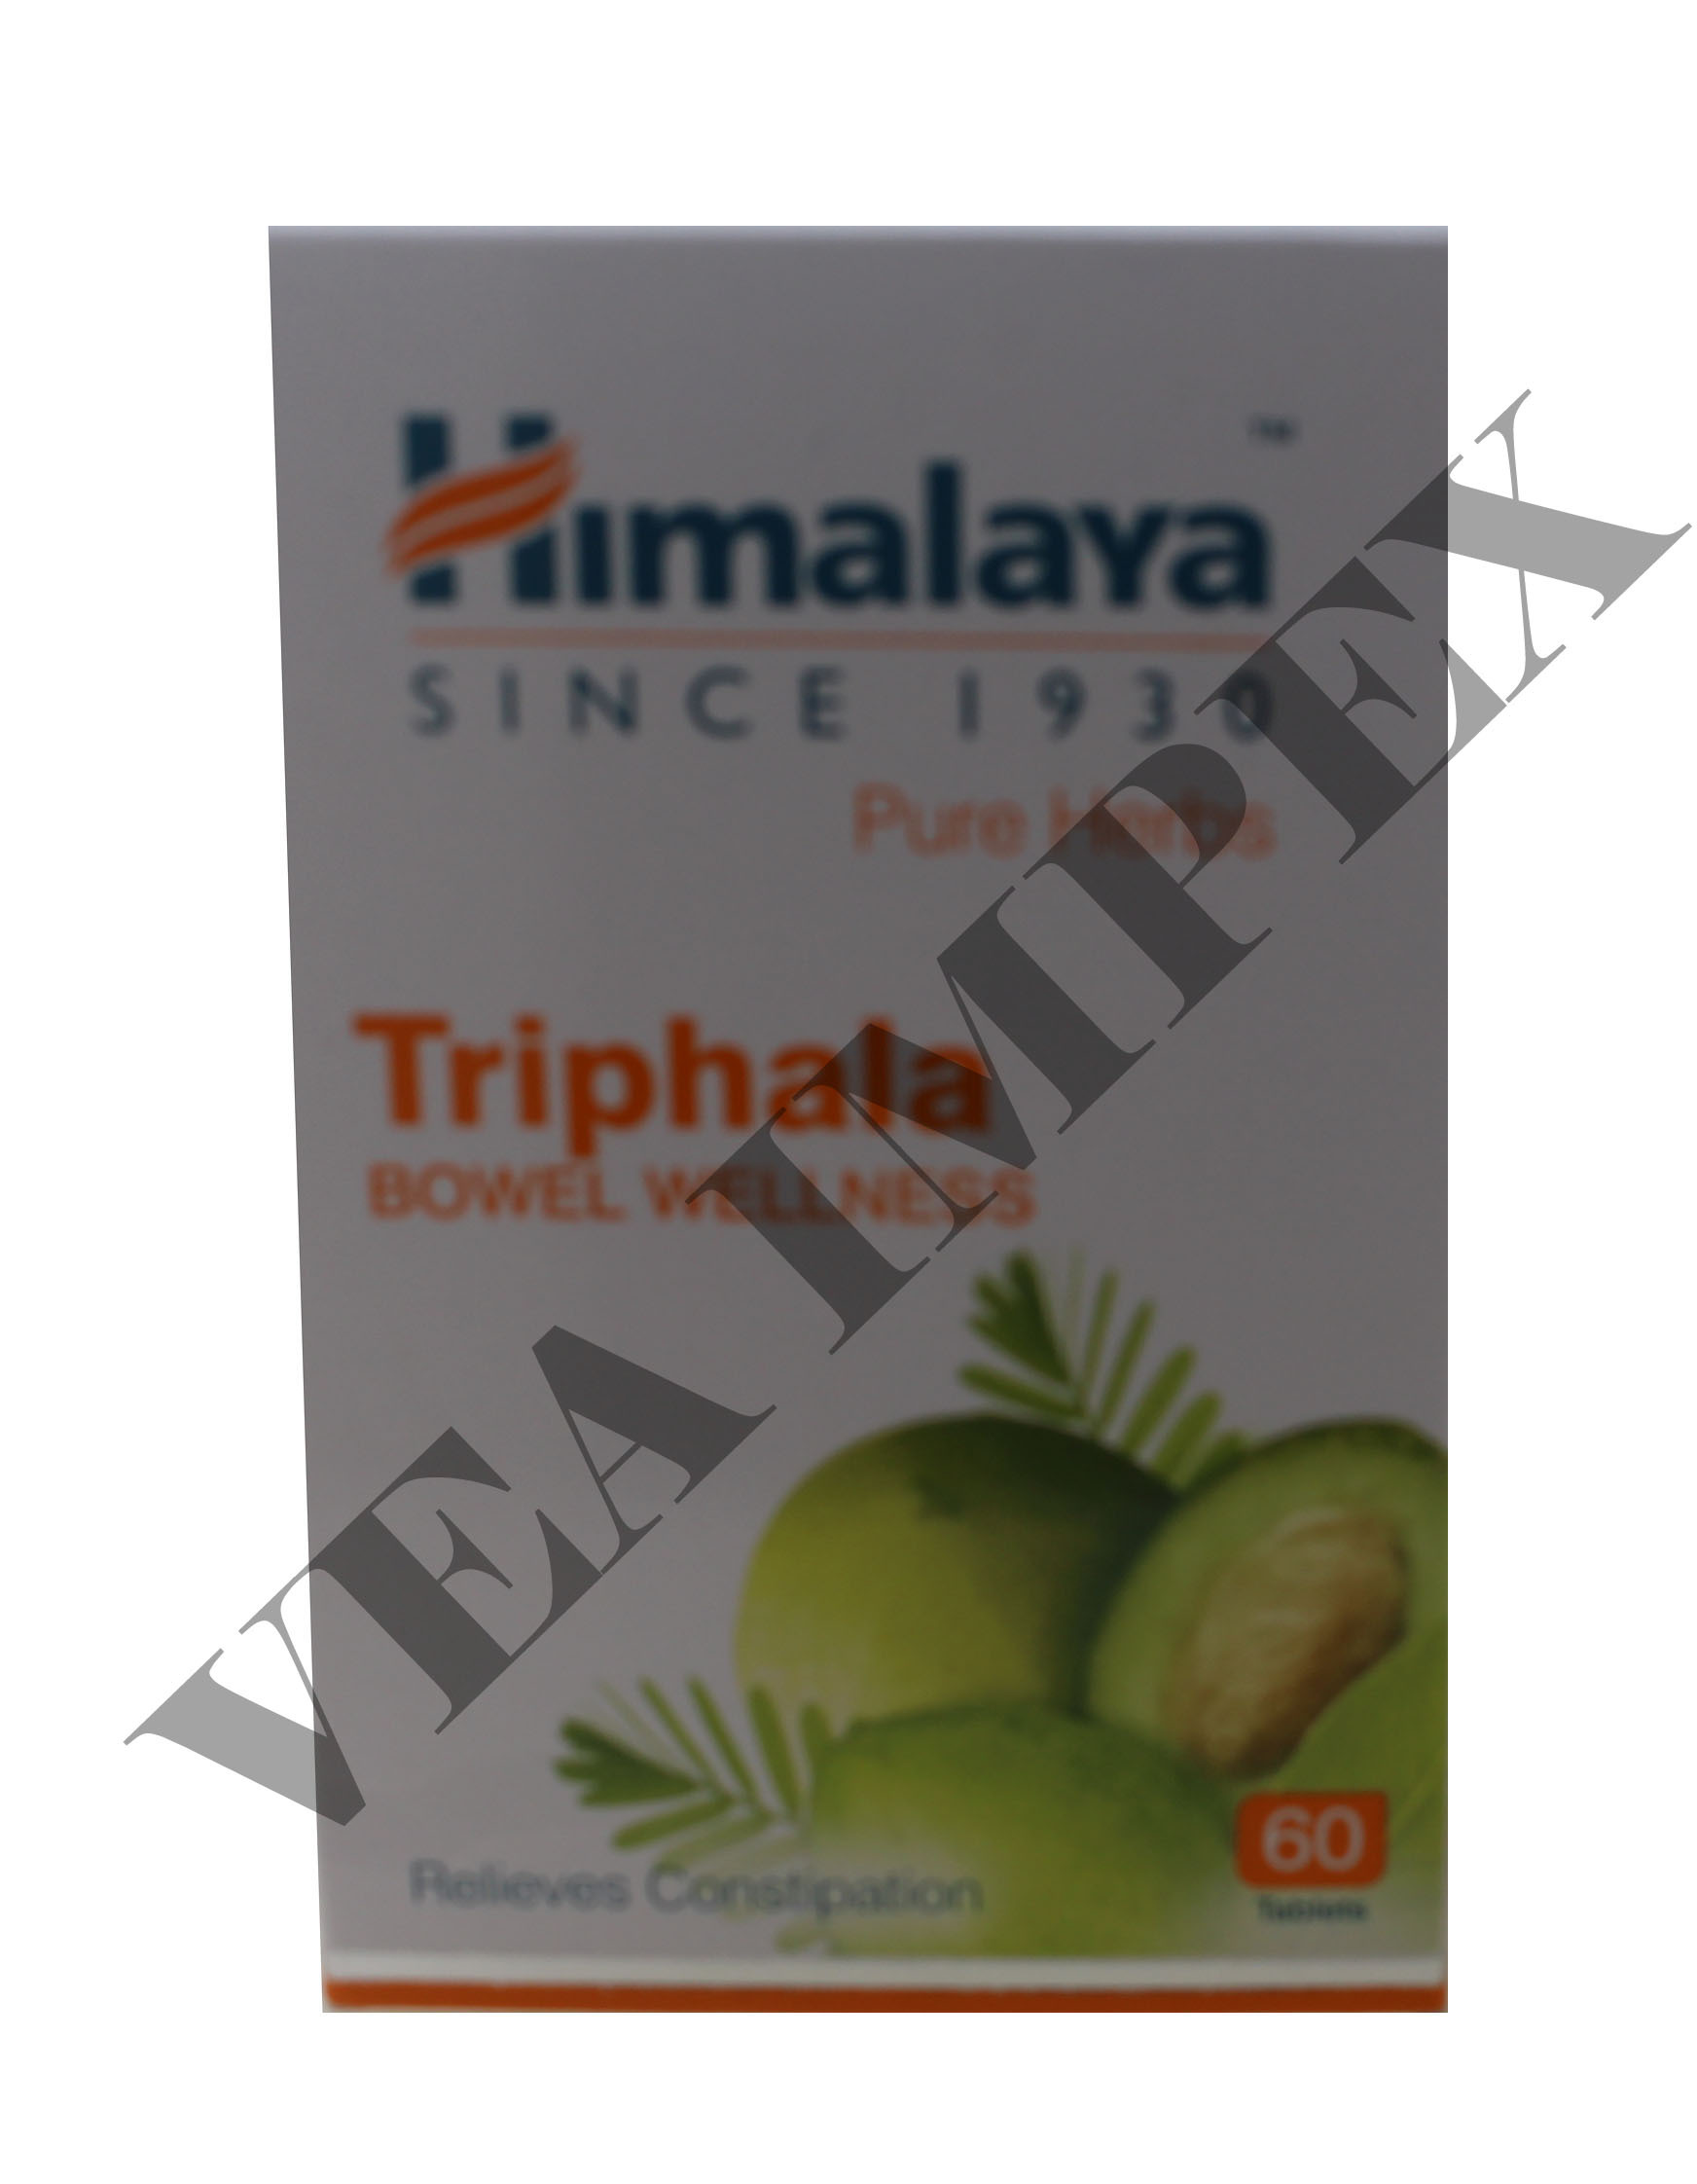 Triphala one